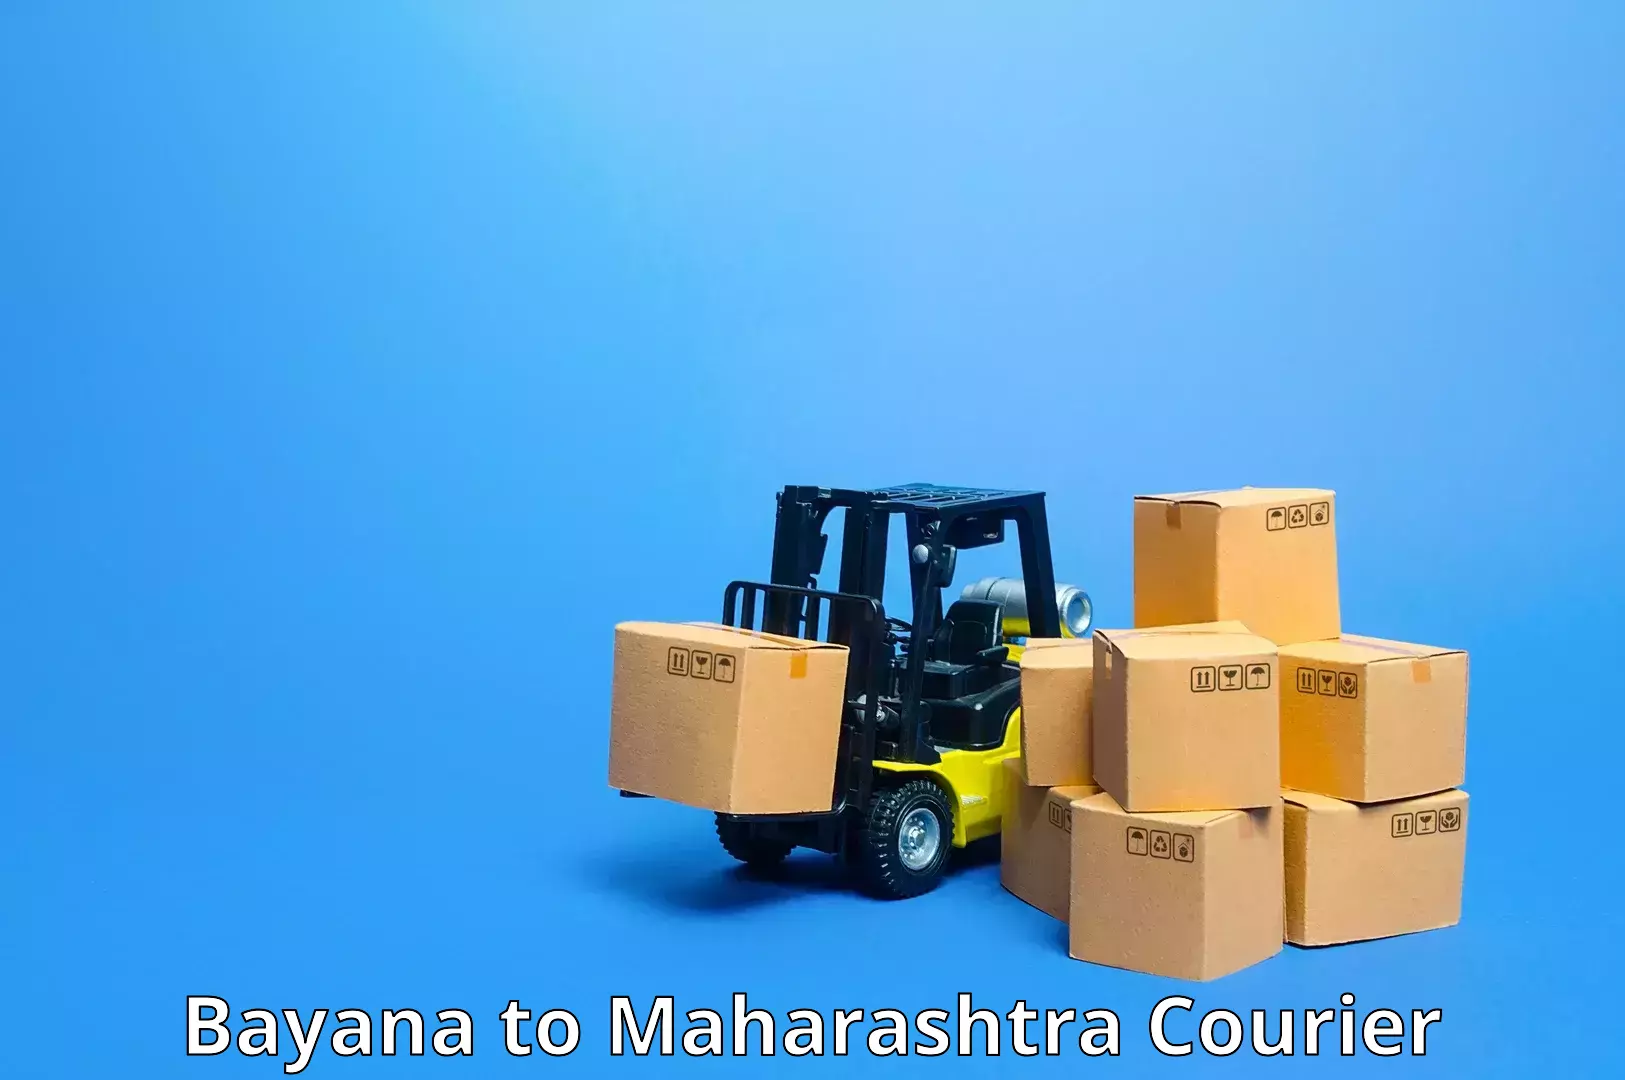 Logistics service provider Bayana to Brahmapuri